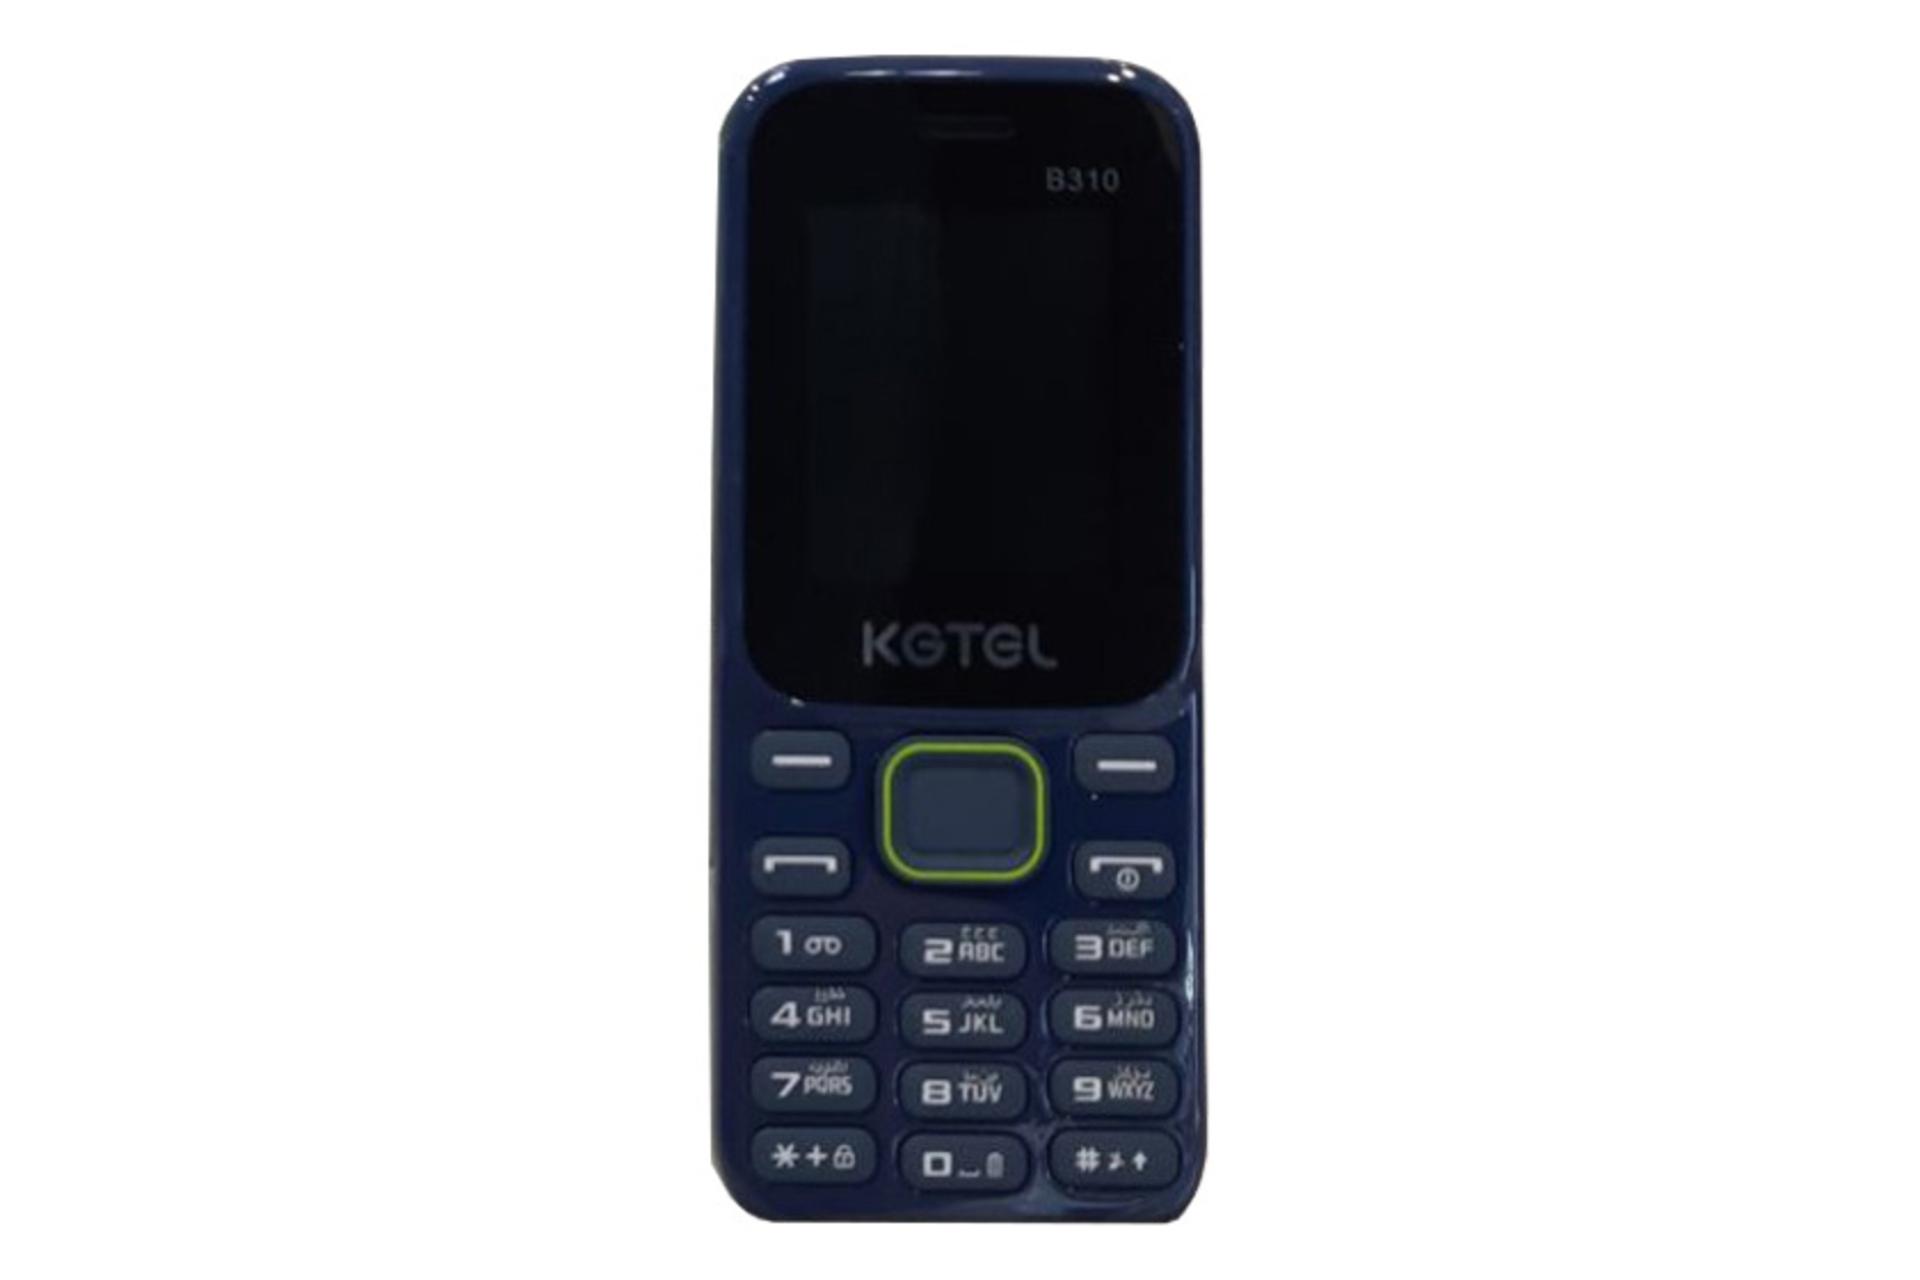 پنل جلو گوشی موبایل کاجیتل KGTEL B310